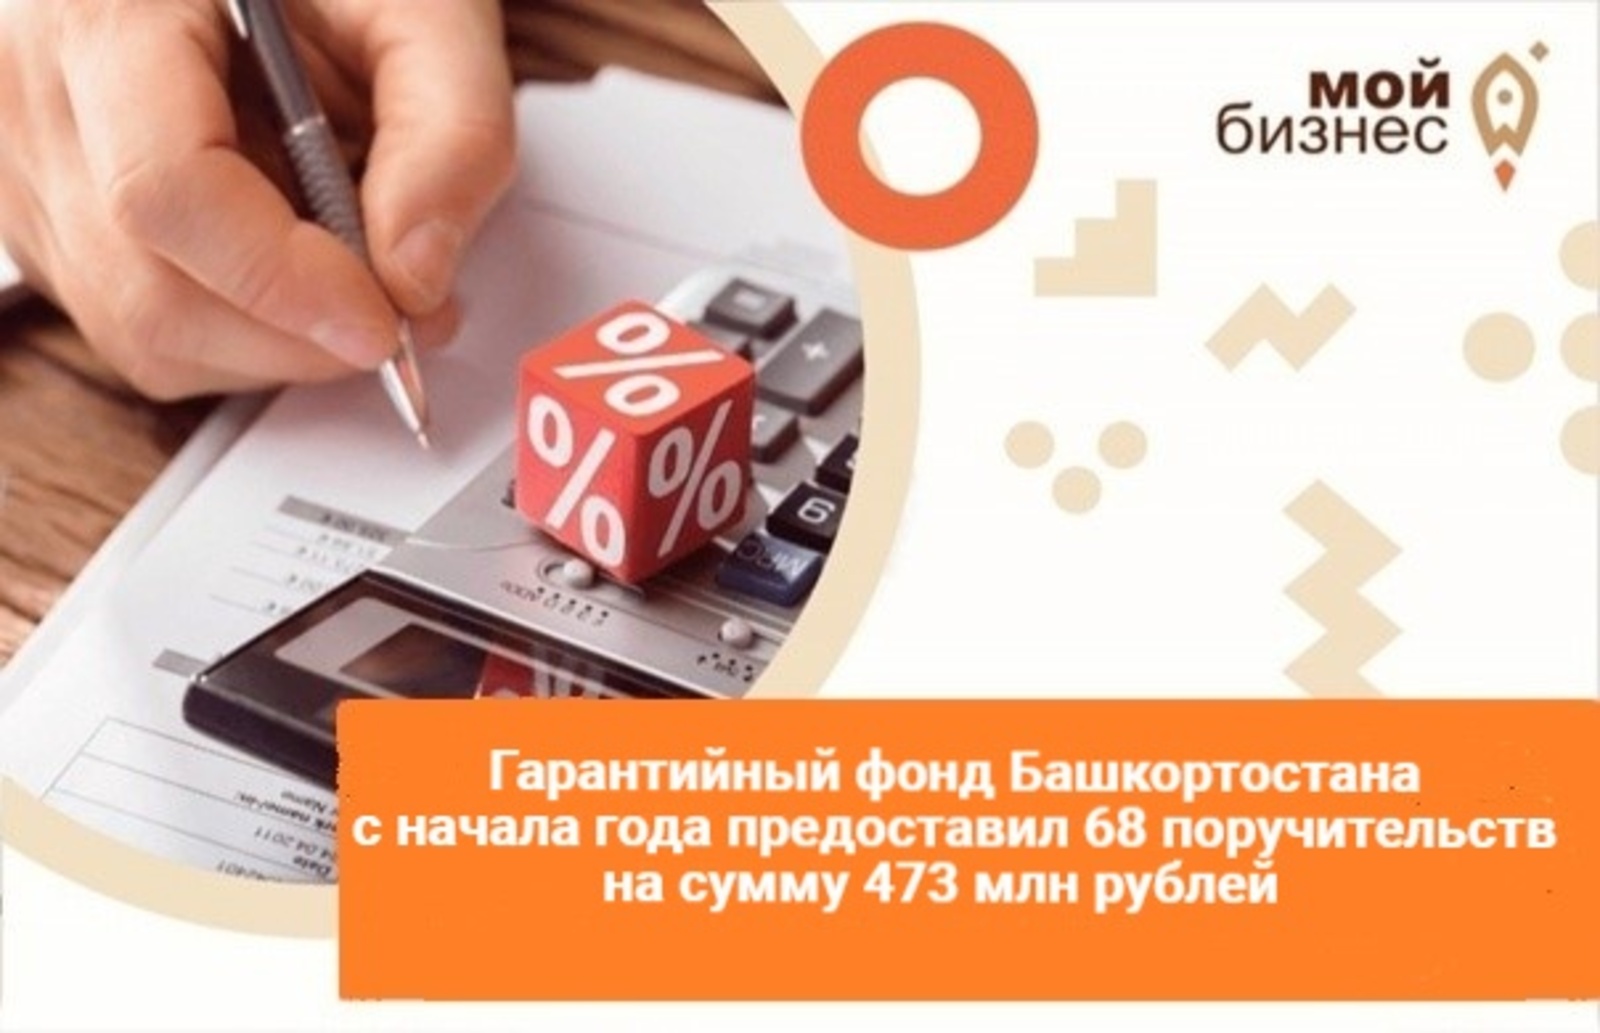 Гарантийный фонд Башкортостана с начала года предоставил 68 поручительств на сумму 473 млн рублей